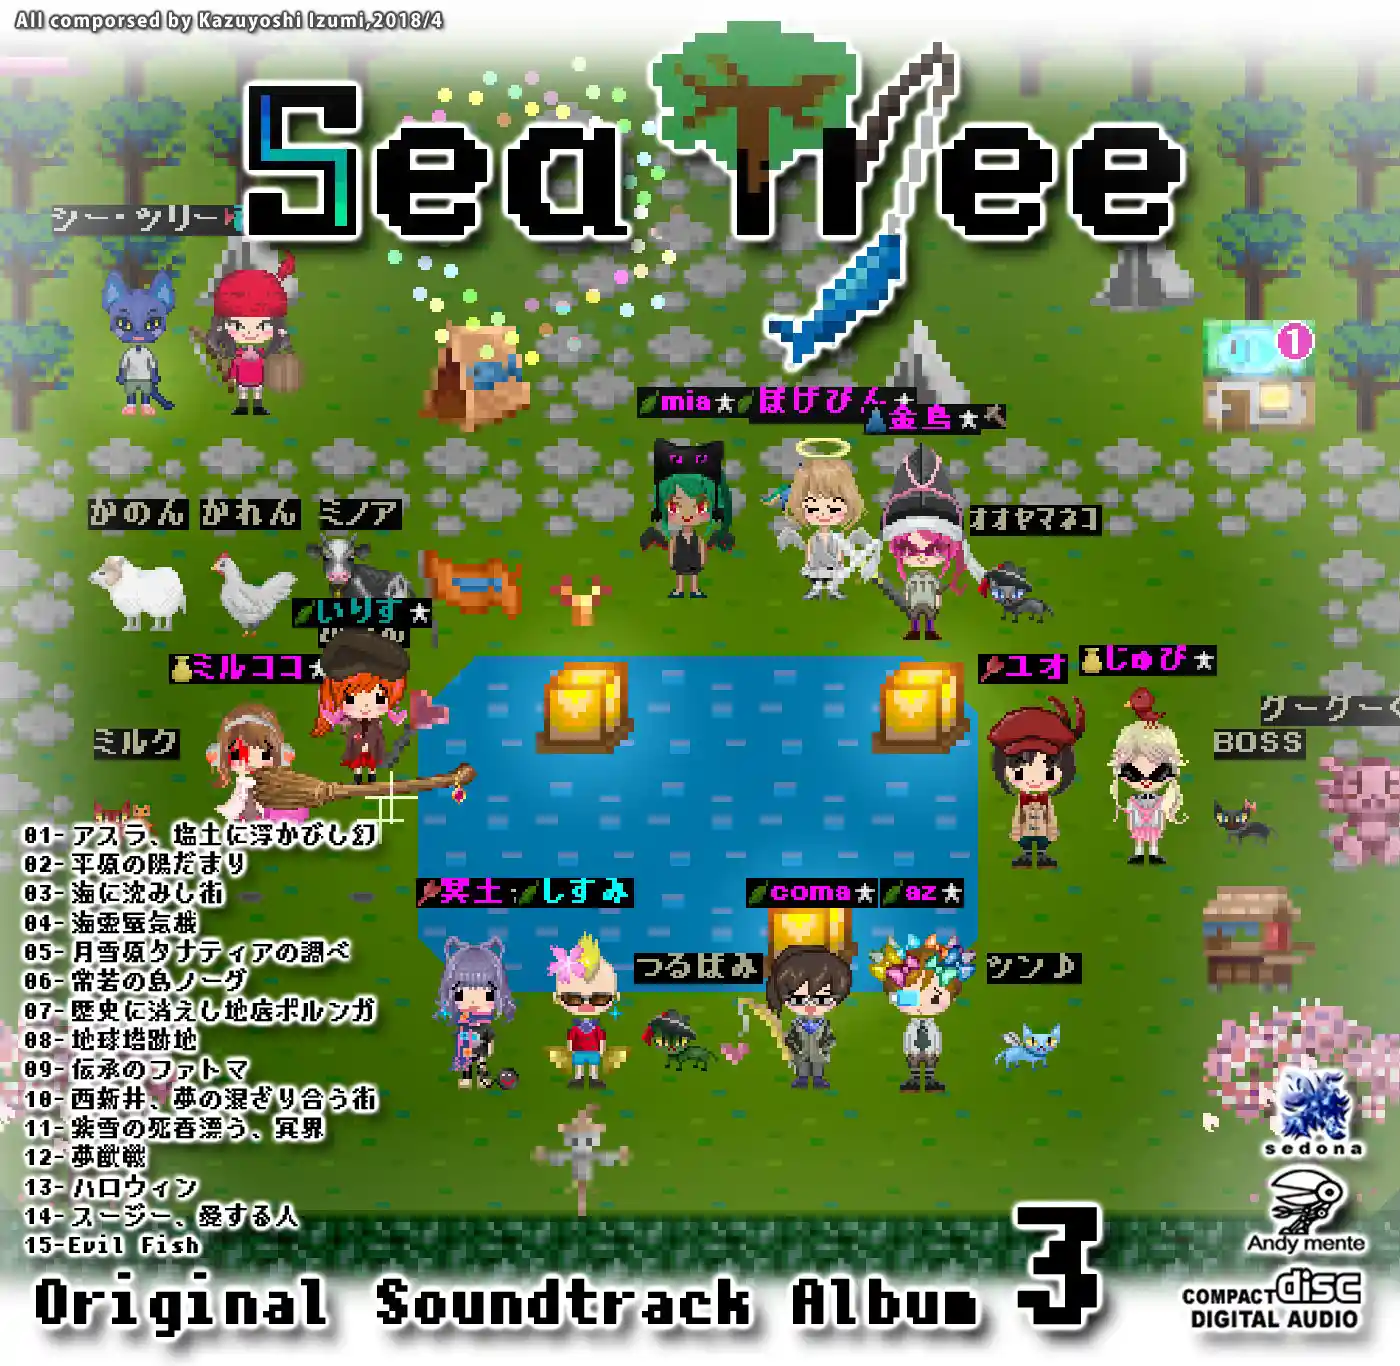 Sea Tree OST3